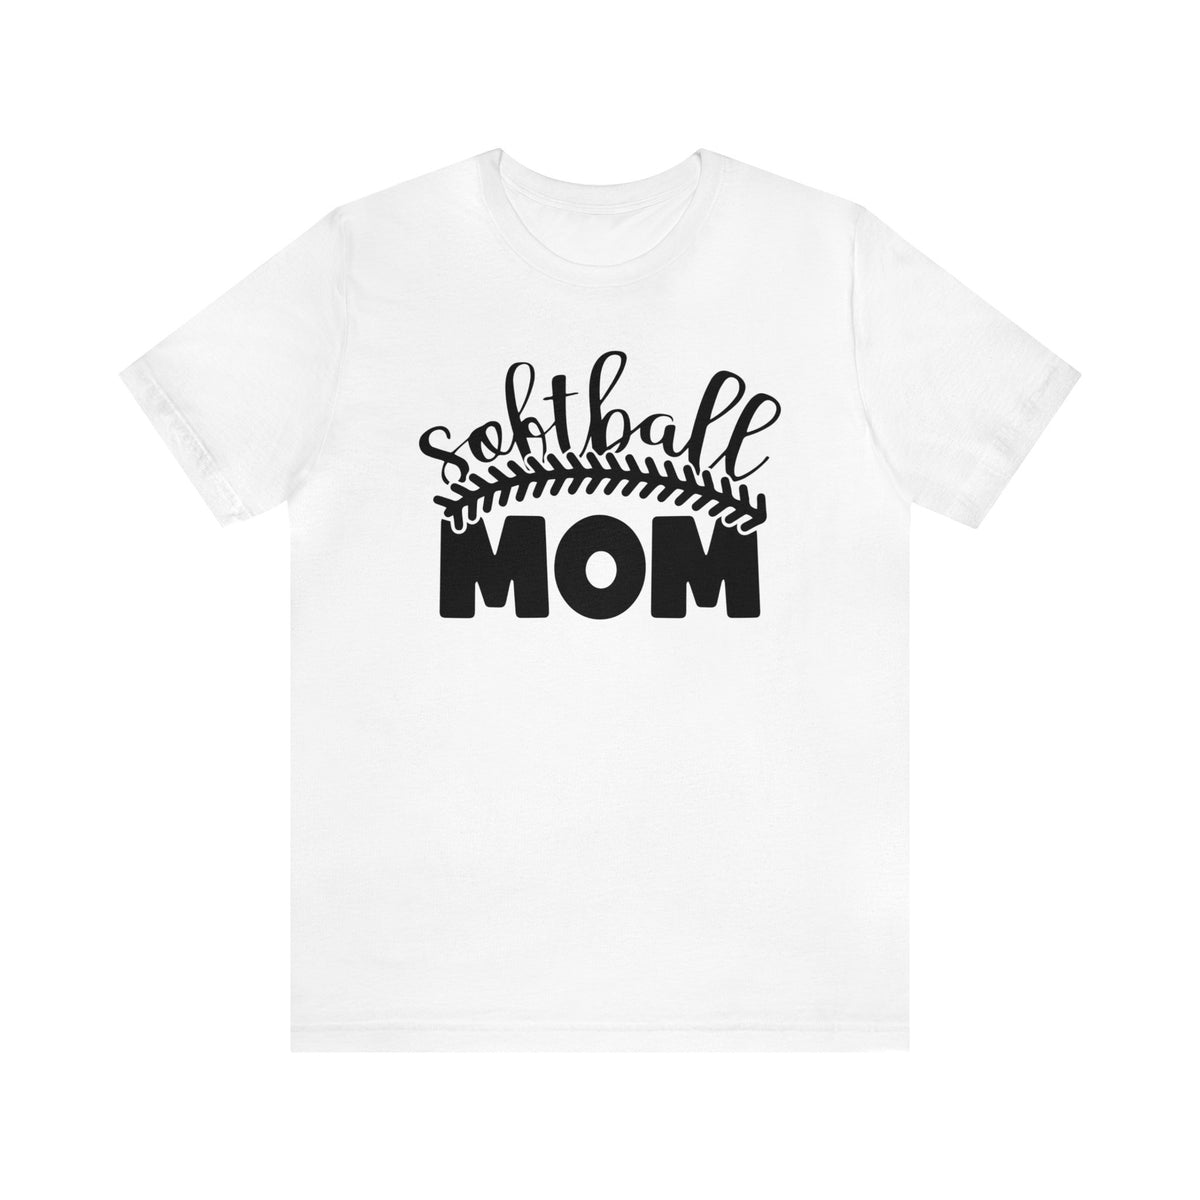 Softball Mom Shirt | Softball Mom Graphic Tee | Softball Mom Gift